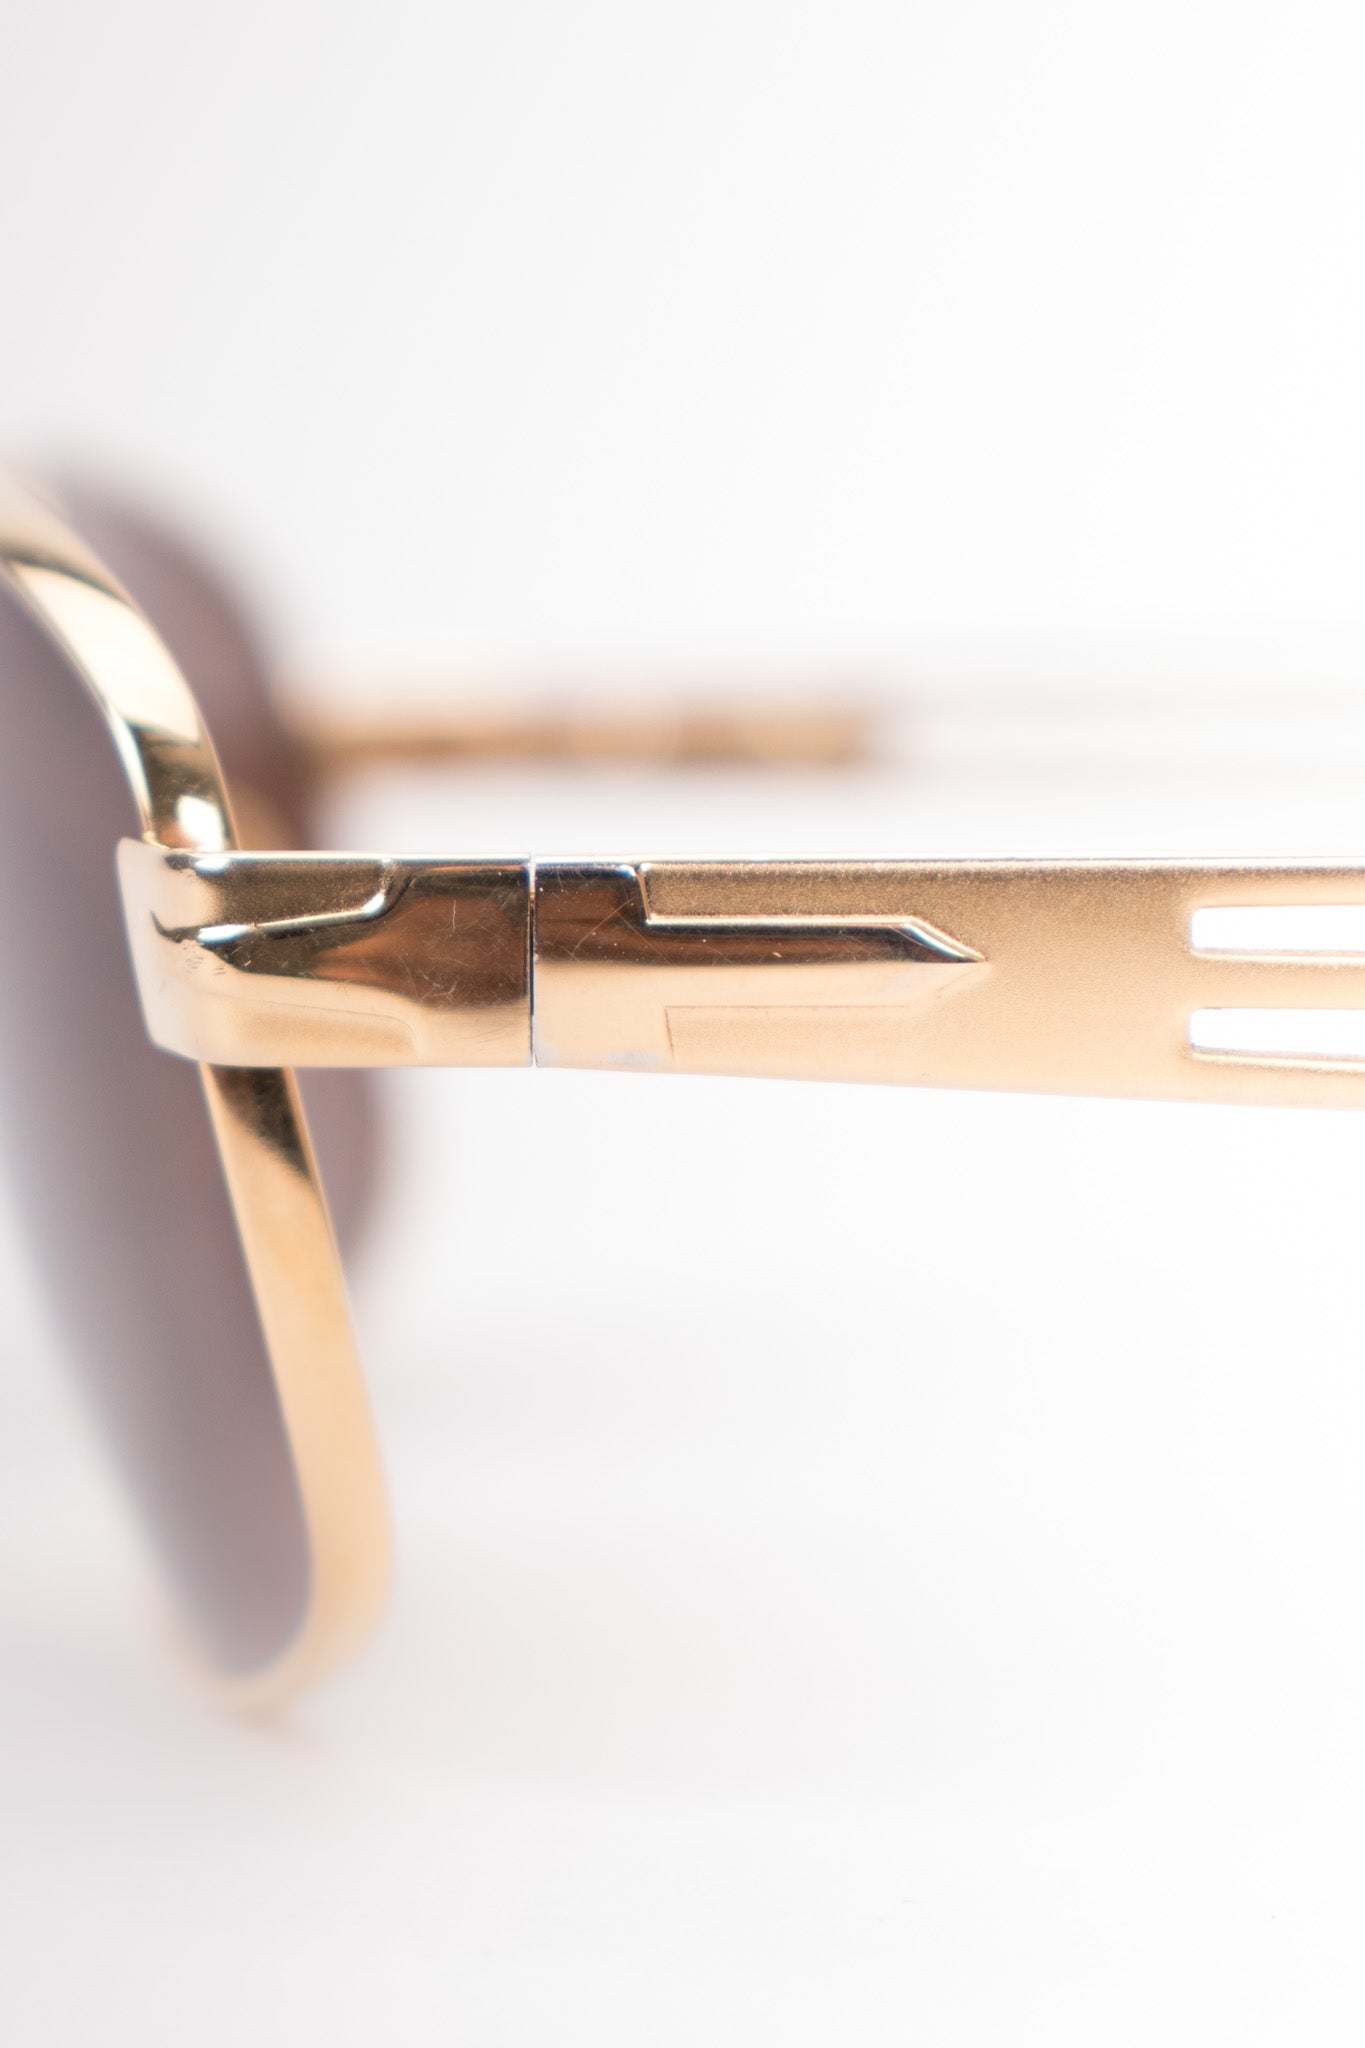 Persol Supreme Arrow Vintage Gold Pilot Sunglasses